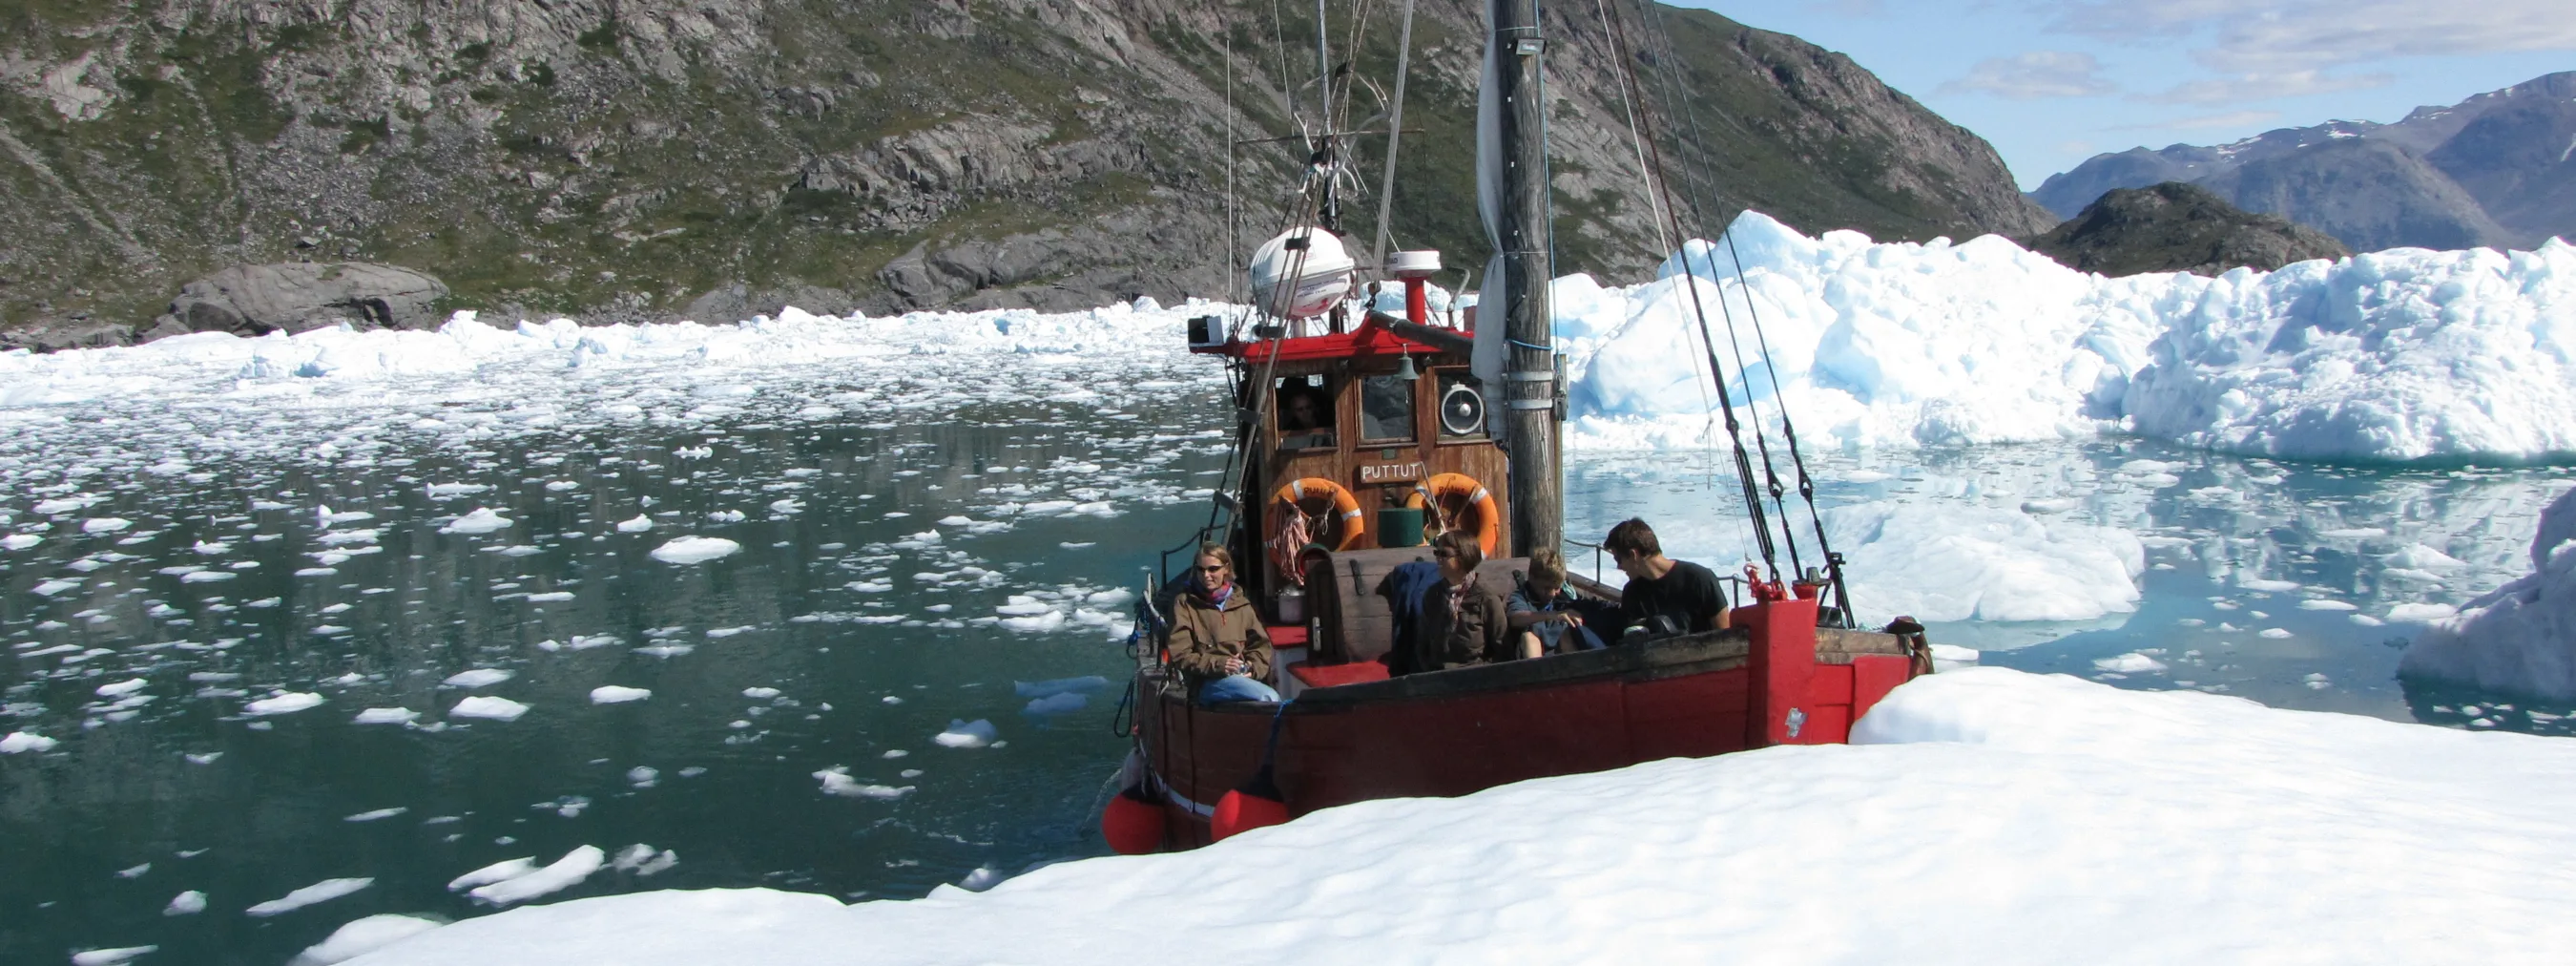 Südgrönland: Qorooq Eisfjord
Bootstour im Eisfjord